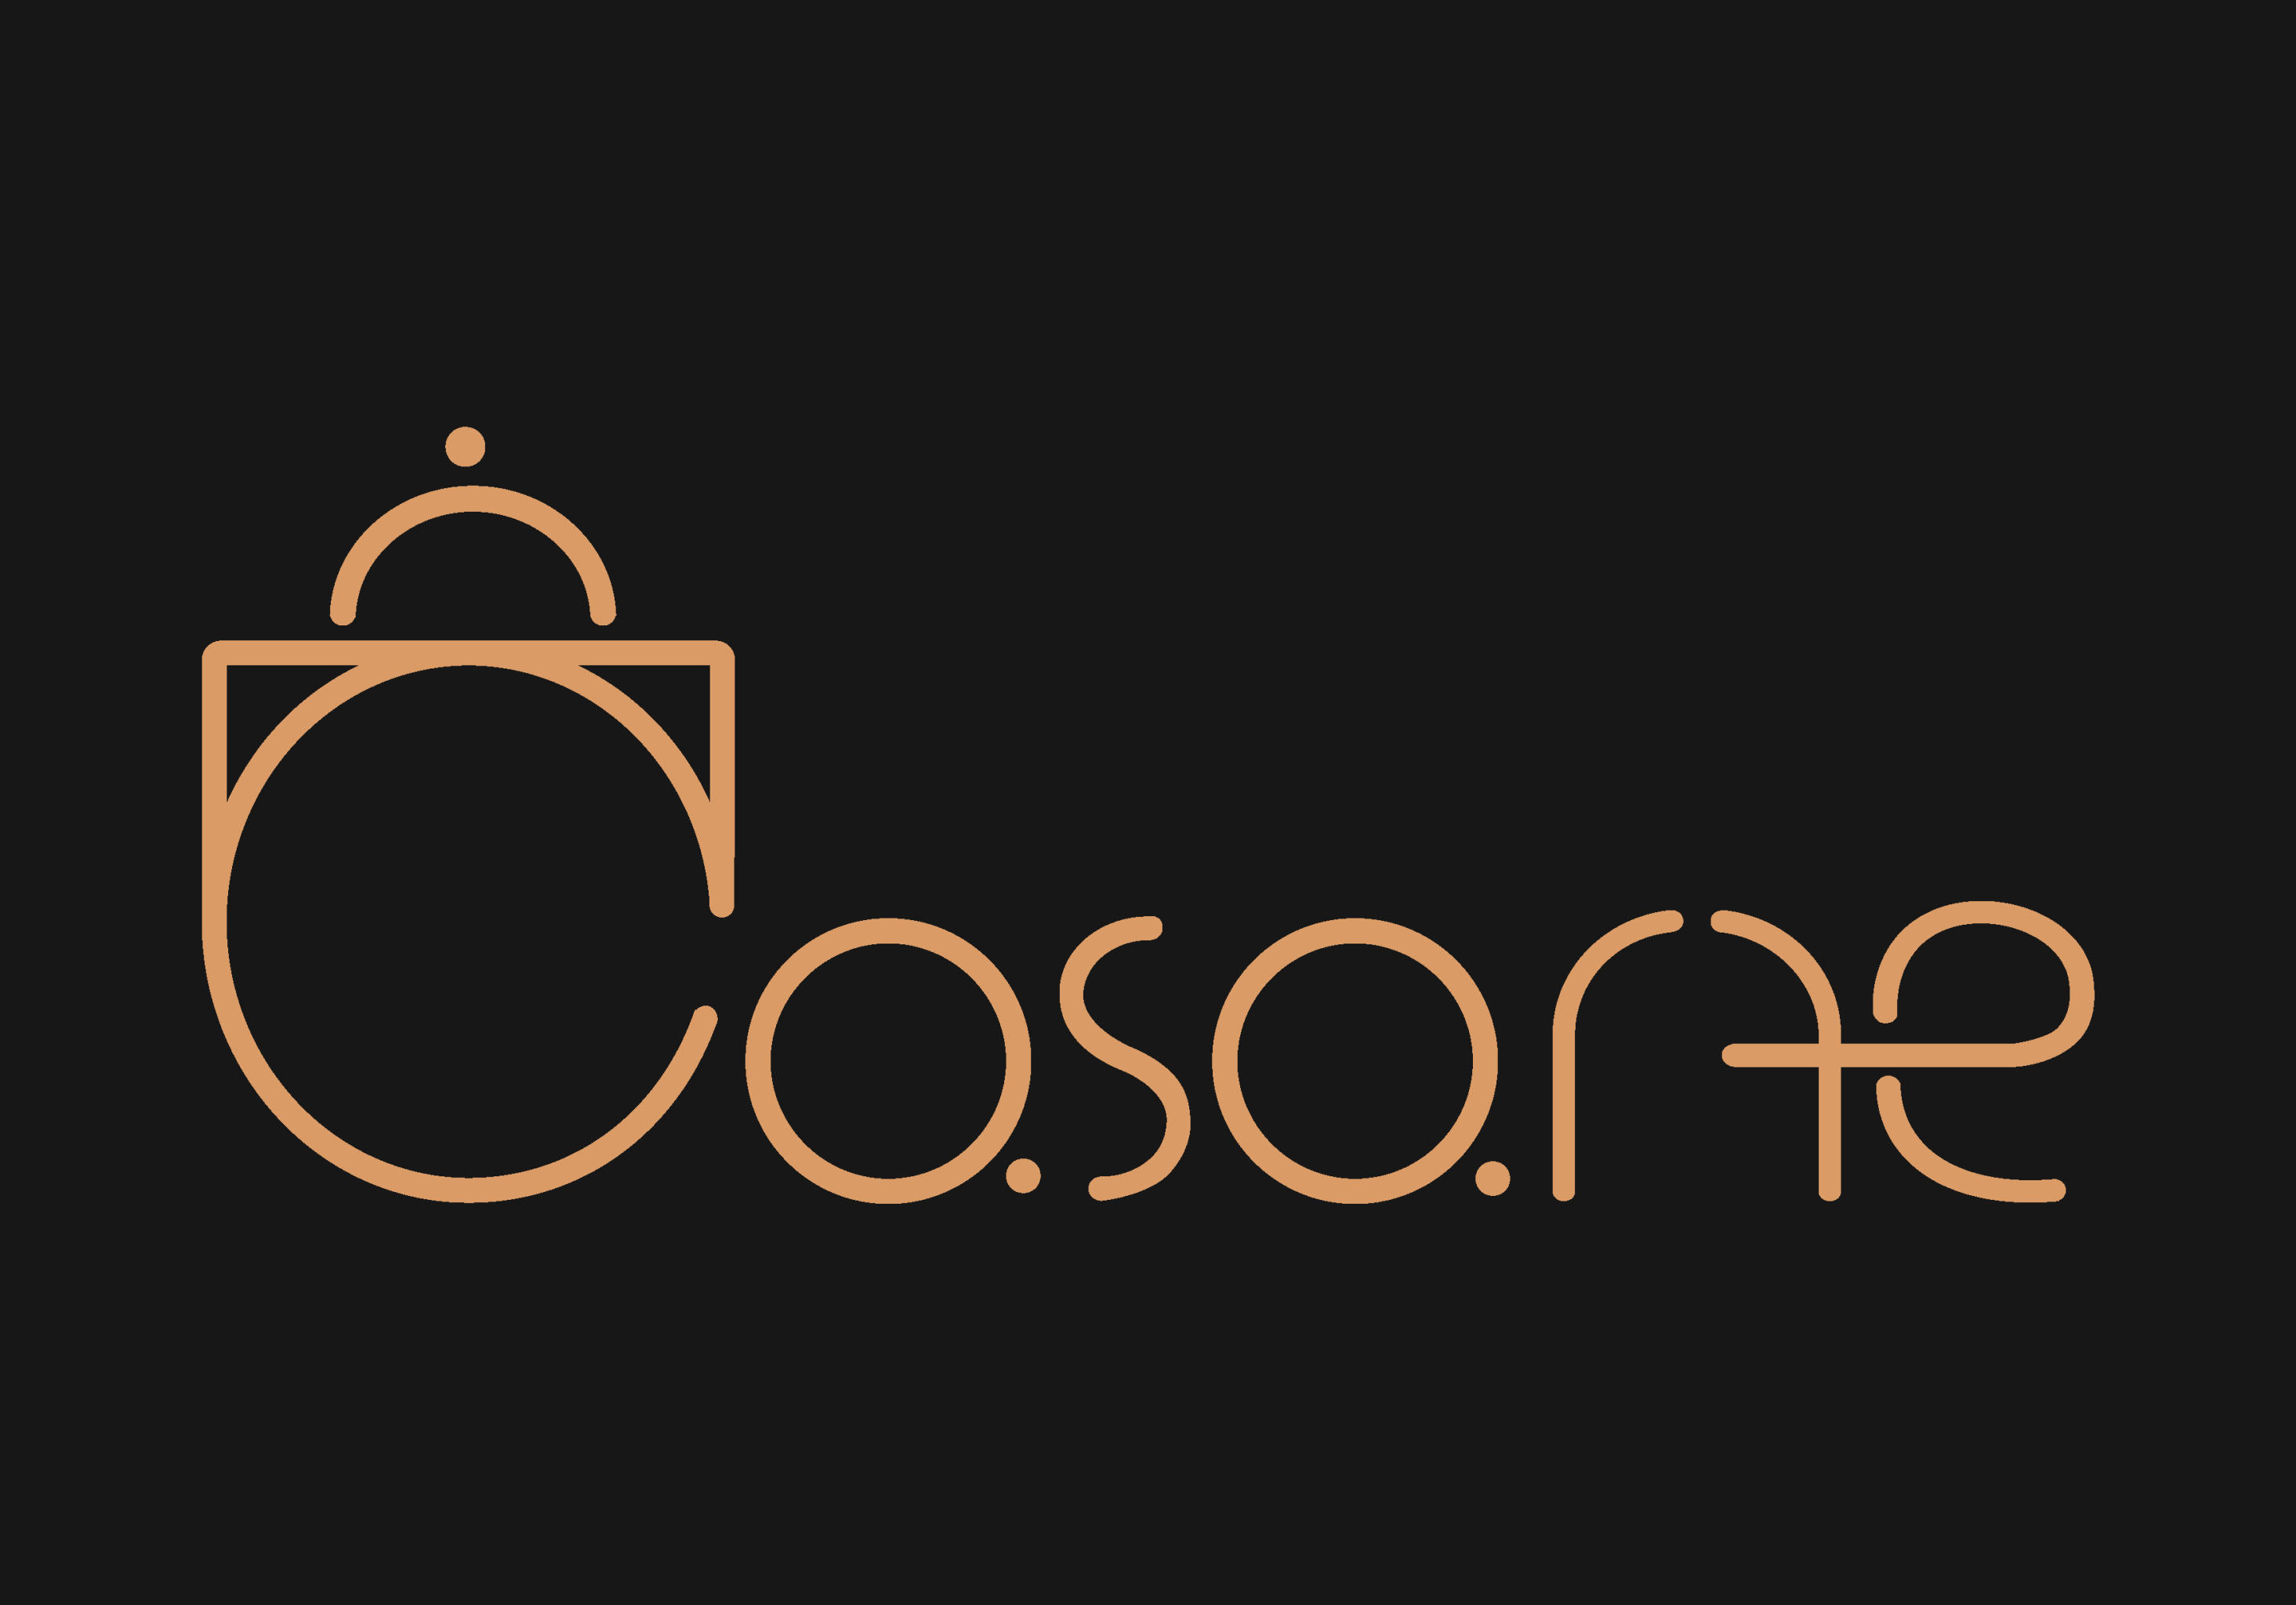 卡萨帝logo 矢量图图片